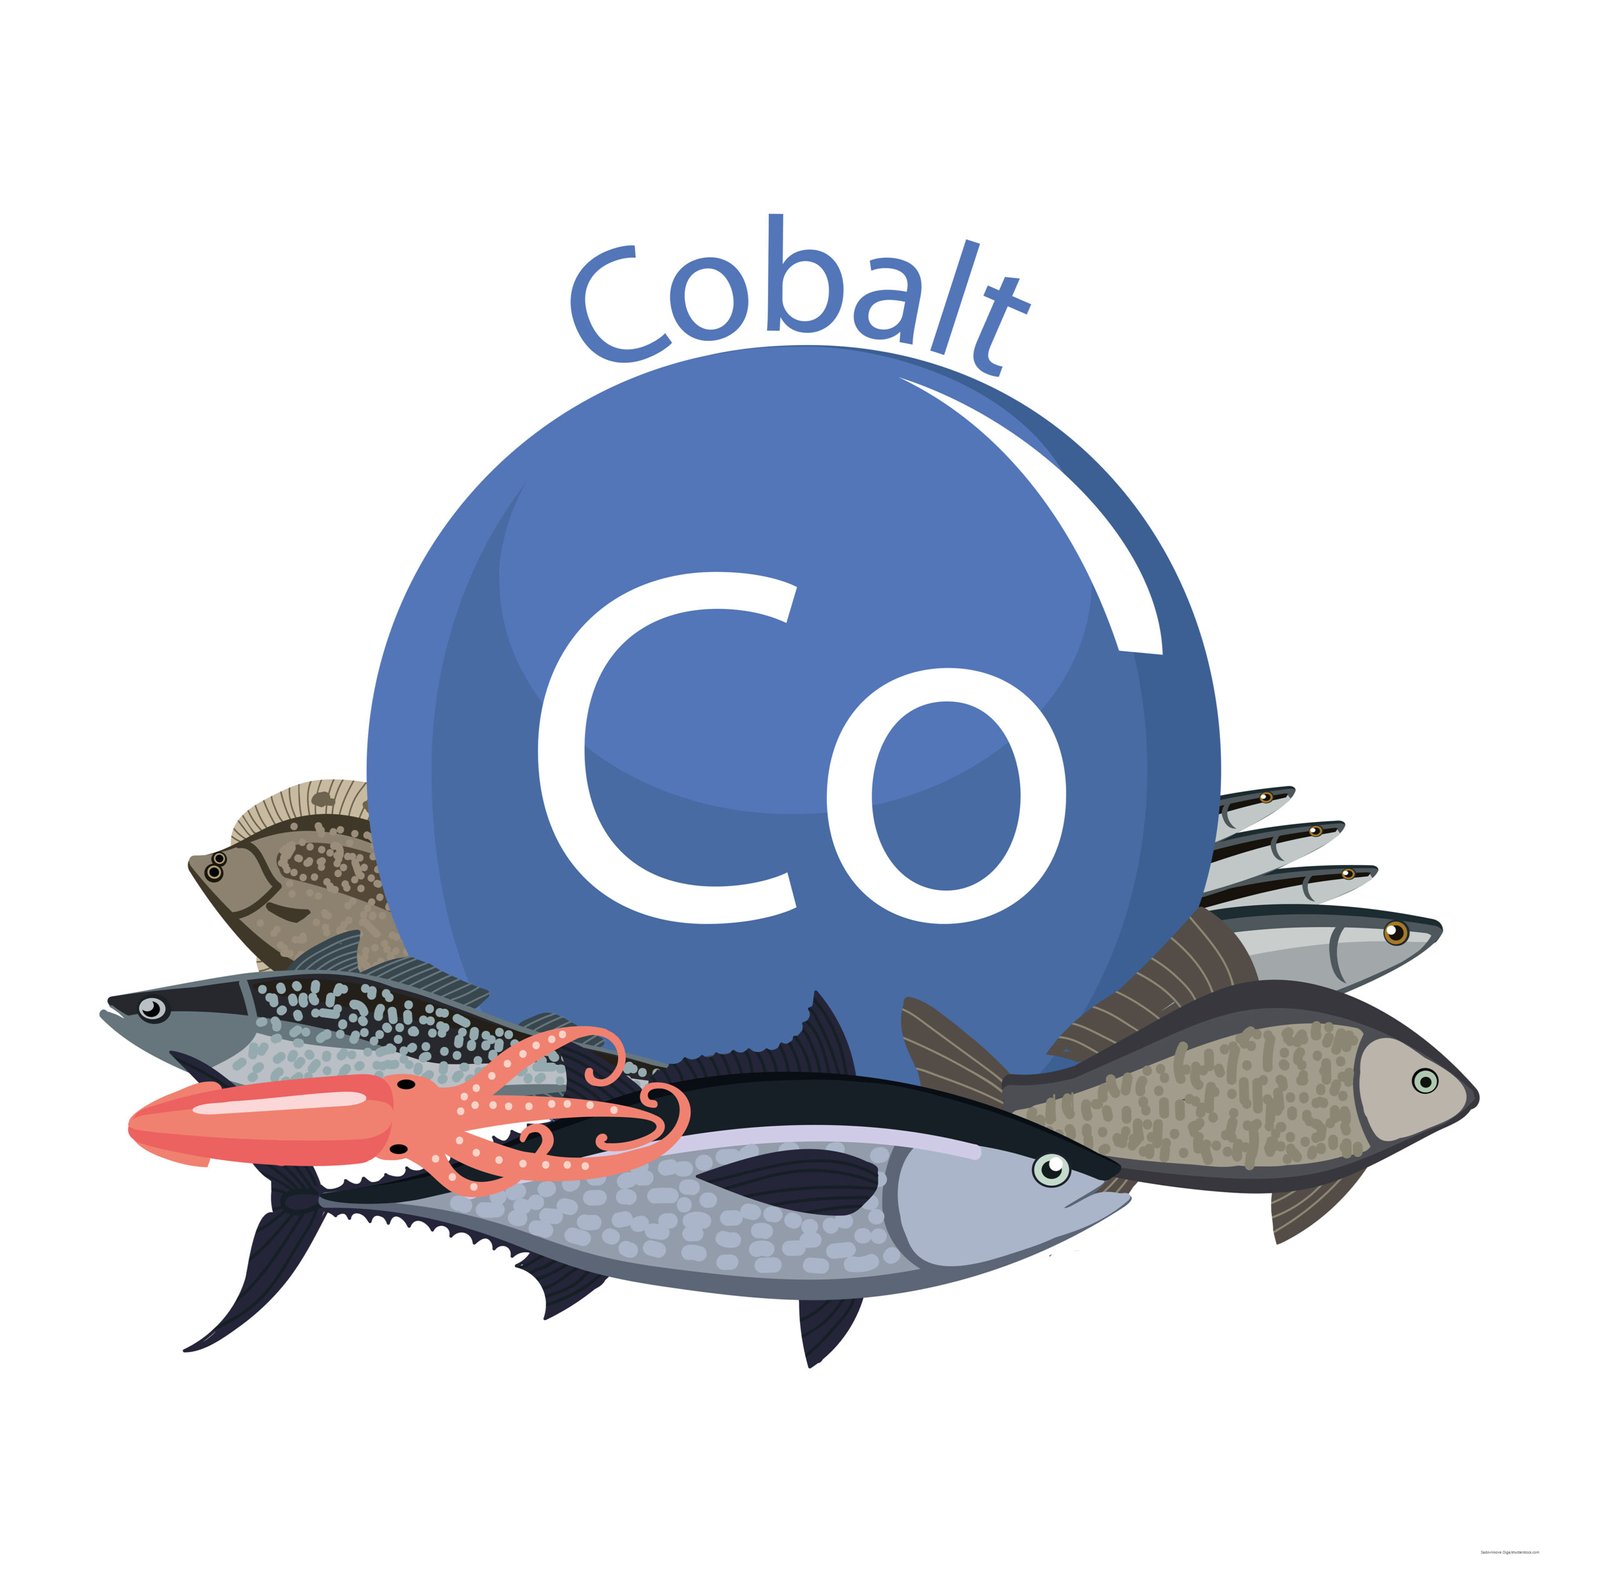 Lebensmittel mit viel Kobalt: Fisch und Meeresfrüchte